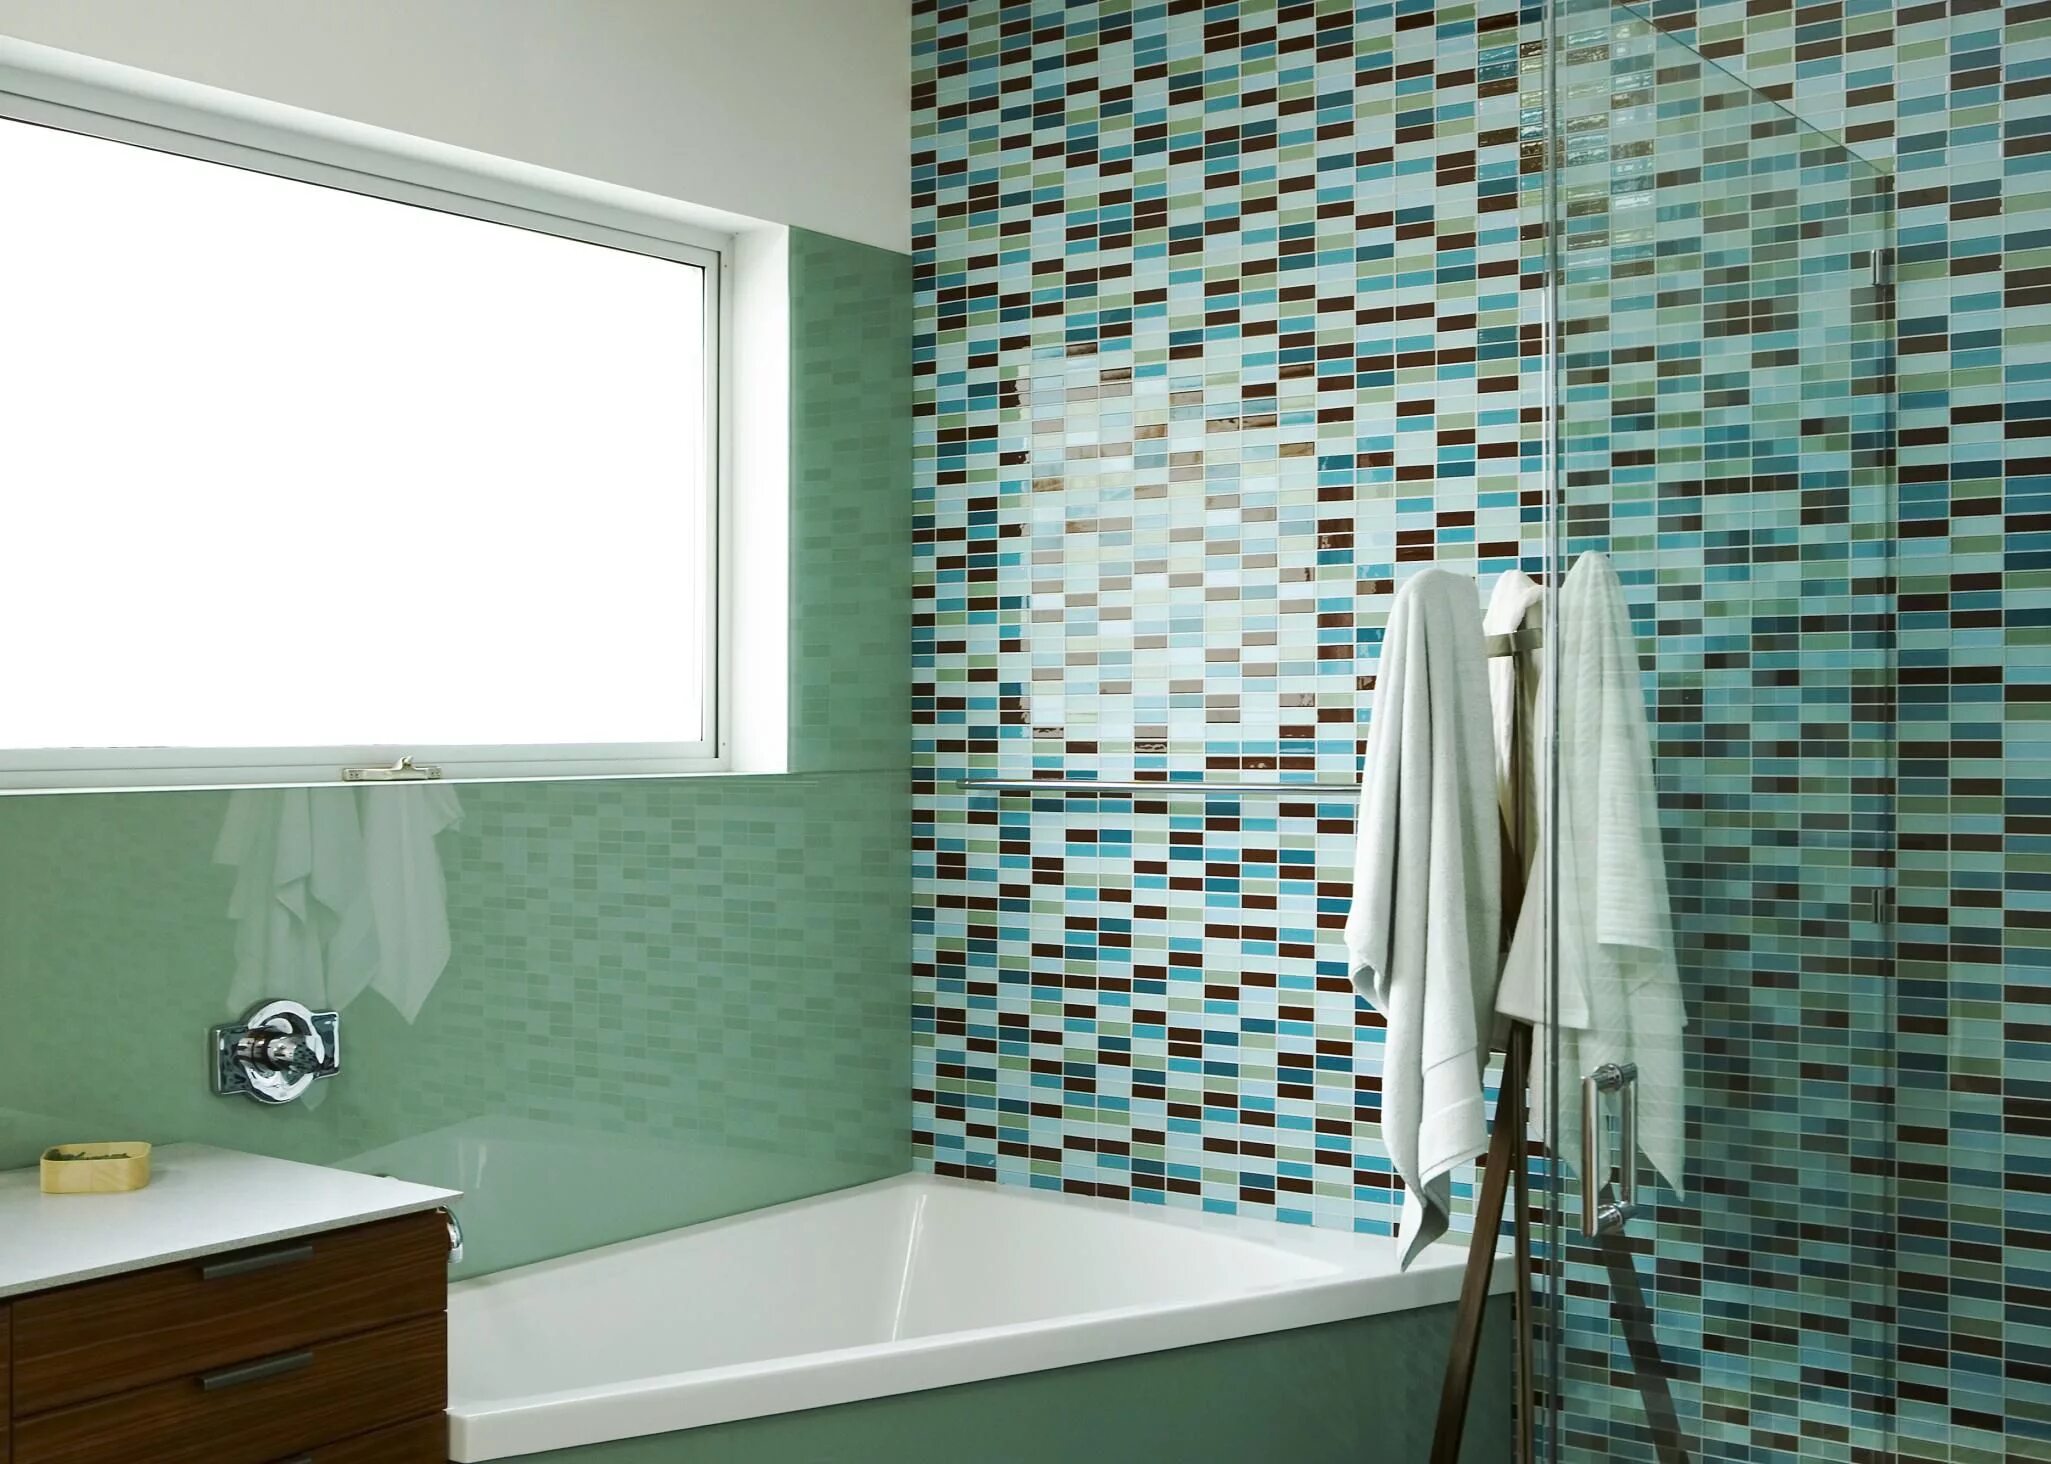 Стена в ванной. Пластиковое покрытие для стен в ванной комнате. Панели мозаика для ванной комнаты. Гибкая плитка для стен в ванной. Стены в ванной комнате варианты